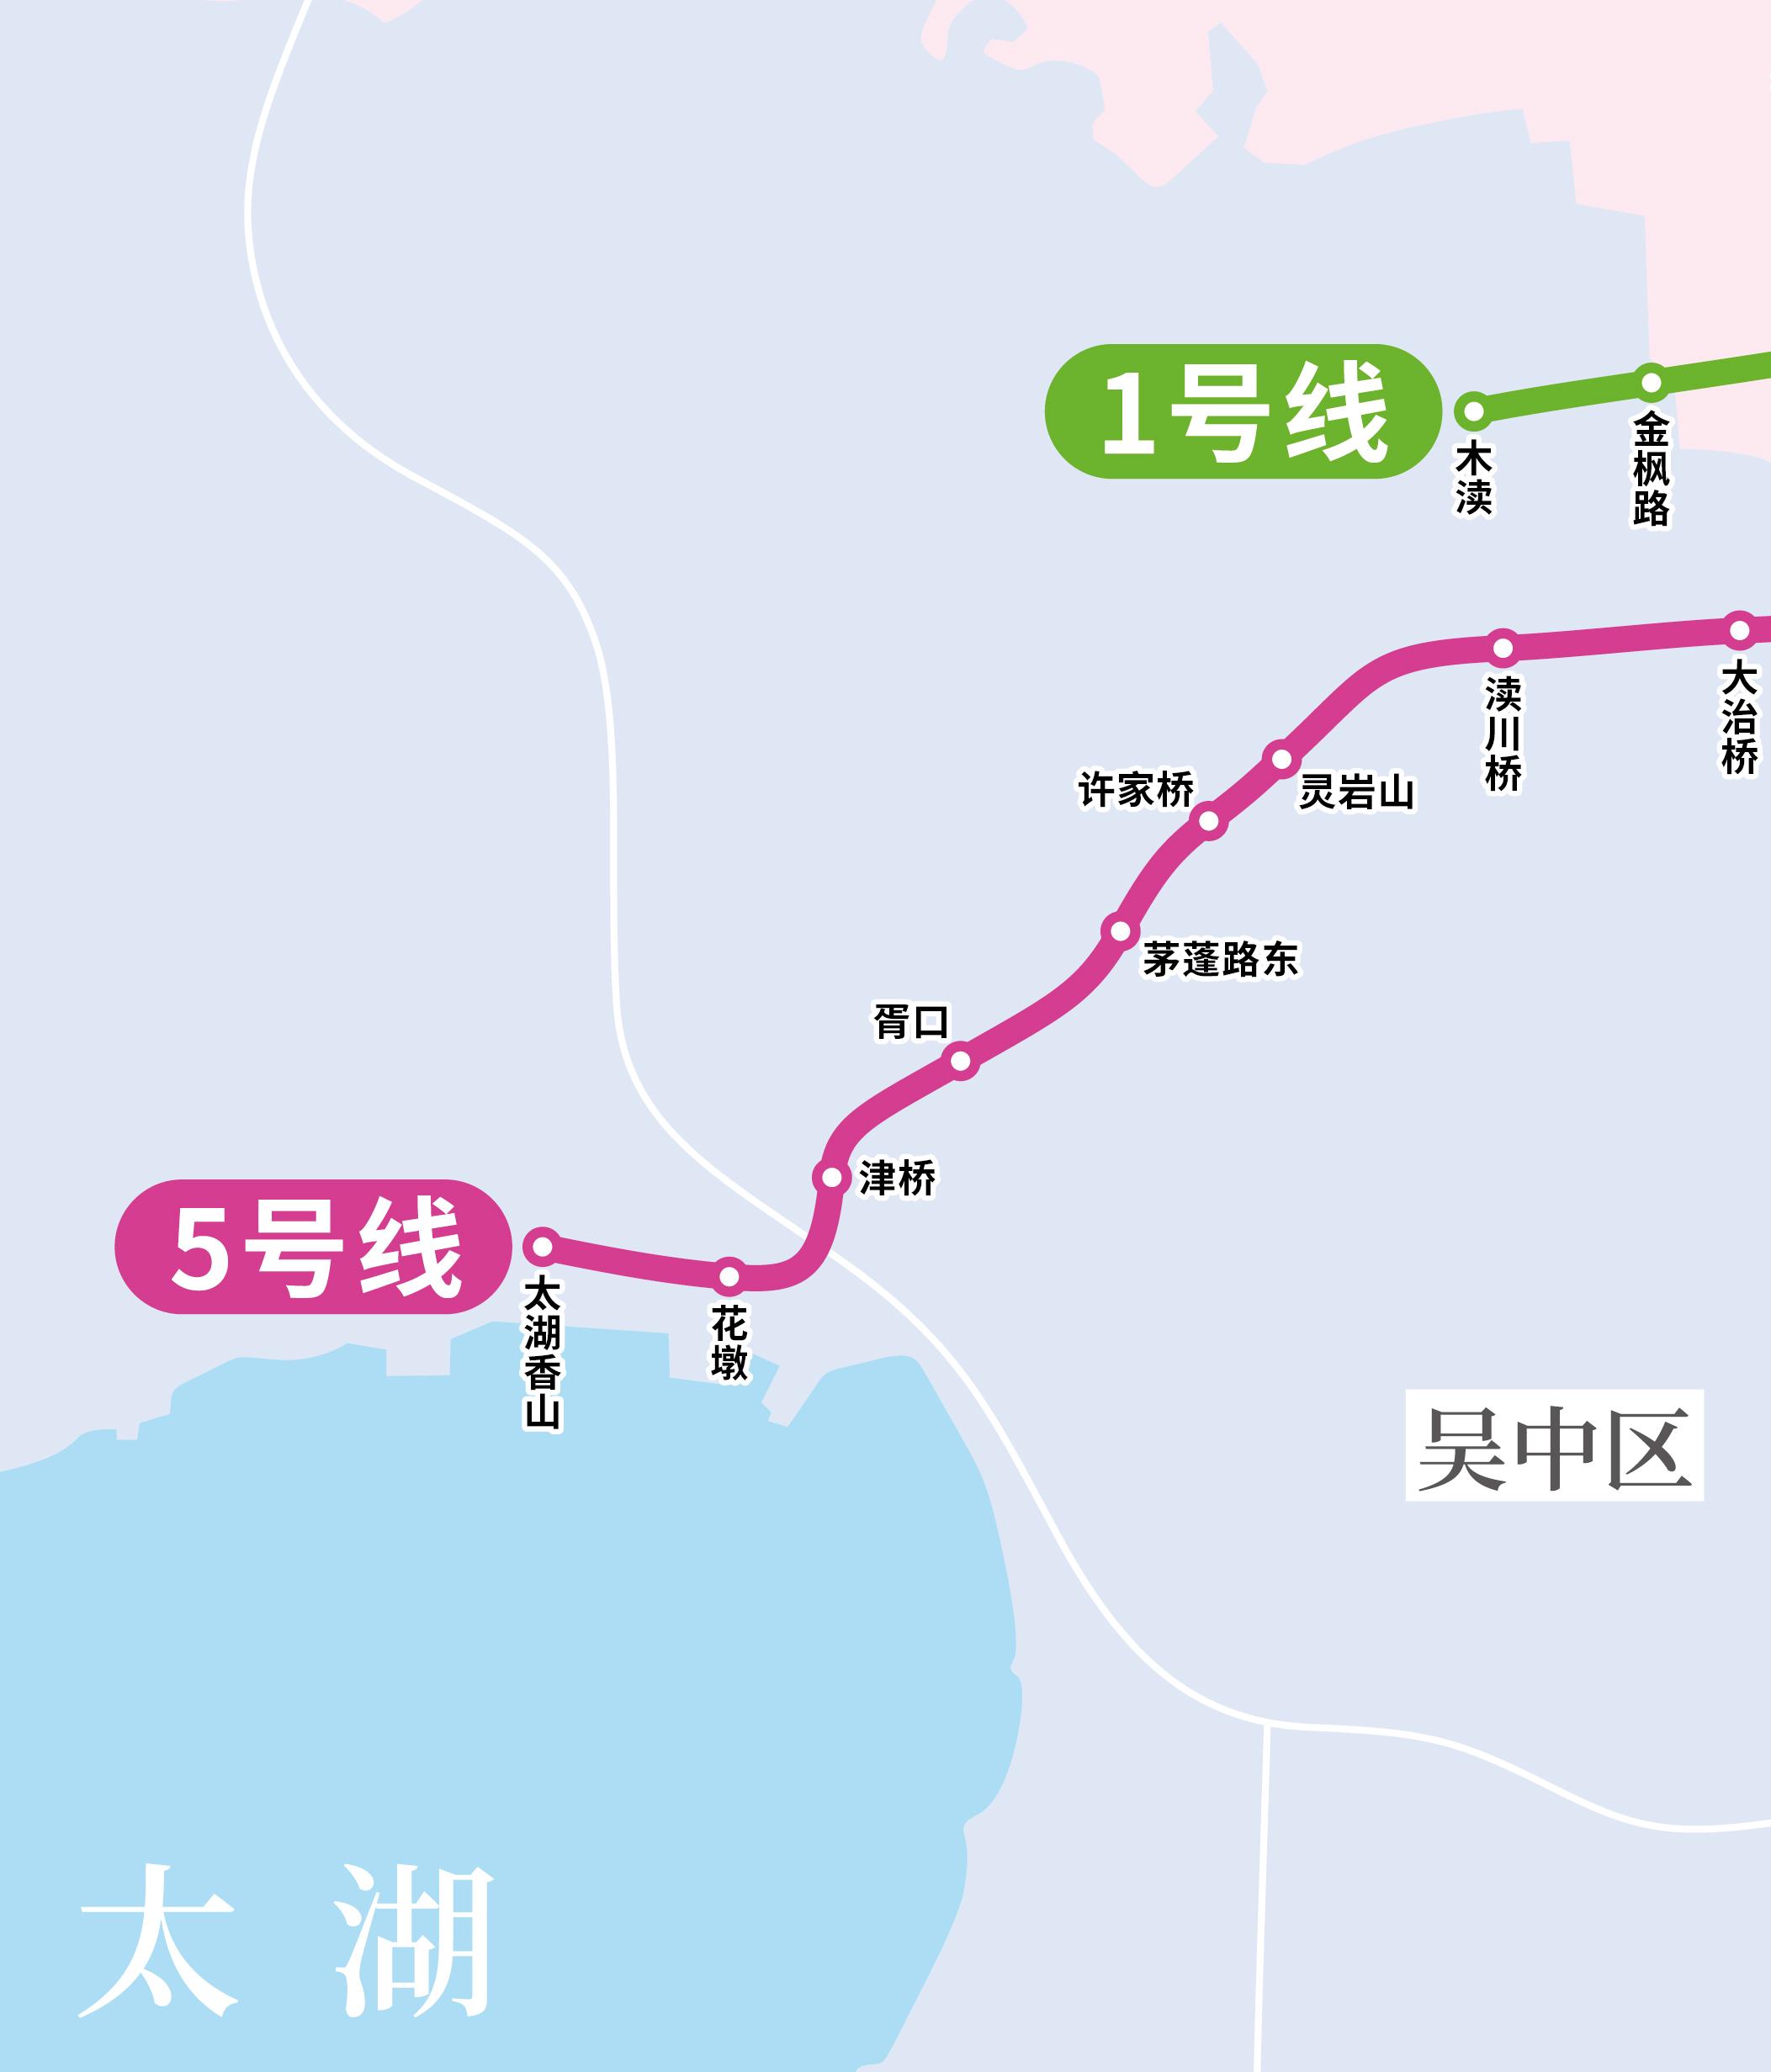 苏州地铁线路 苏州轨道交通运营(在建)线路图，苏州地铁线路图  第9张